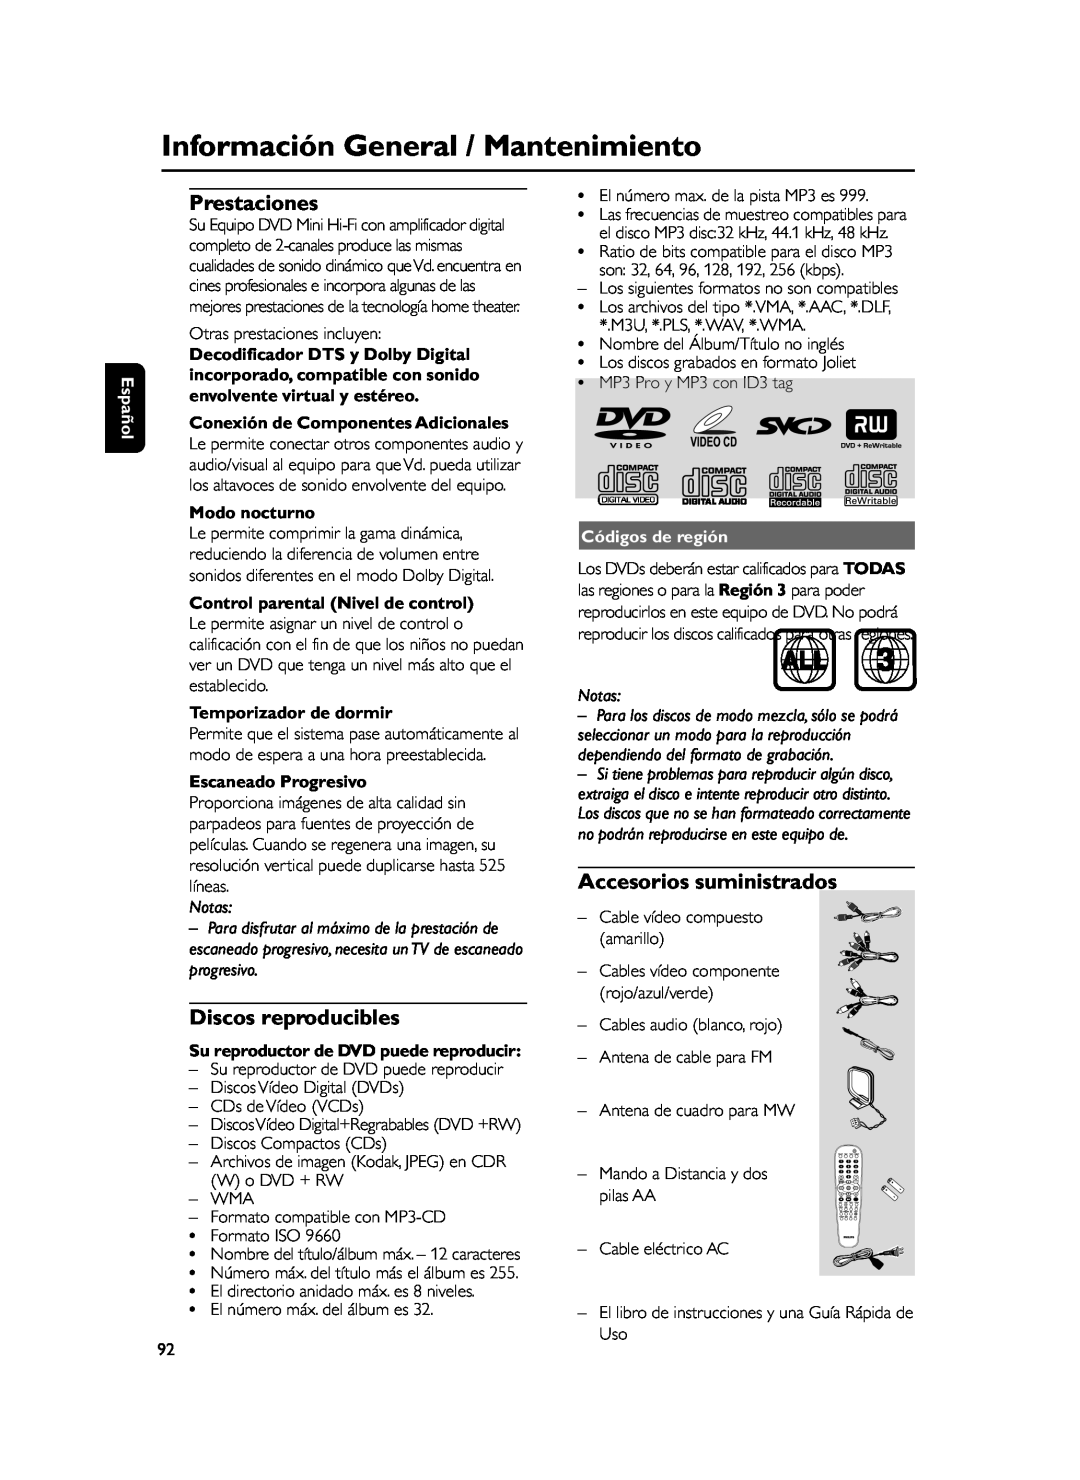 Philips FWD39 Información General / Mantenimiento, Prestaciones, Discos reproducibles, Accesorios suministrados, Notas 